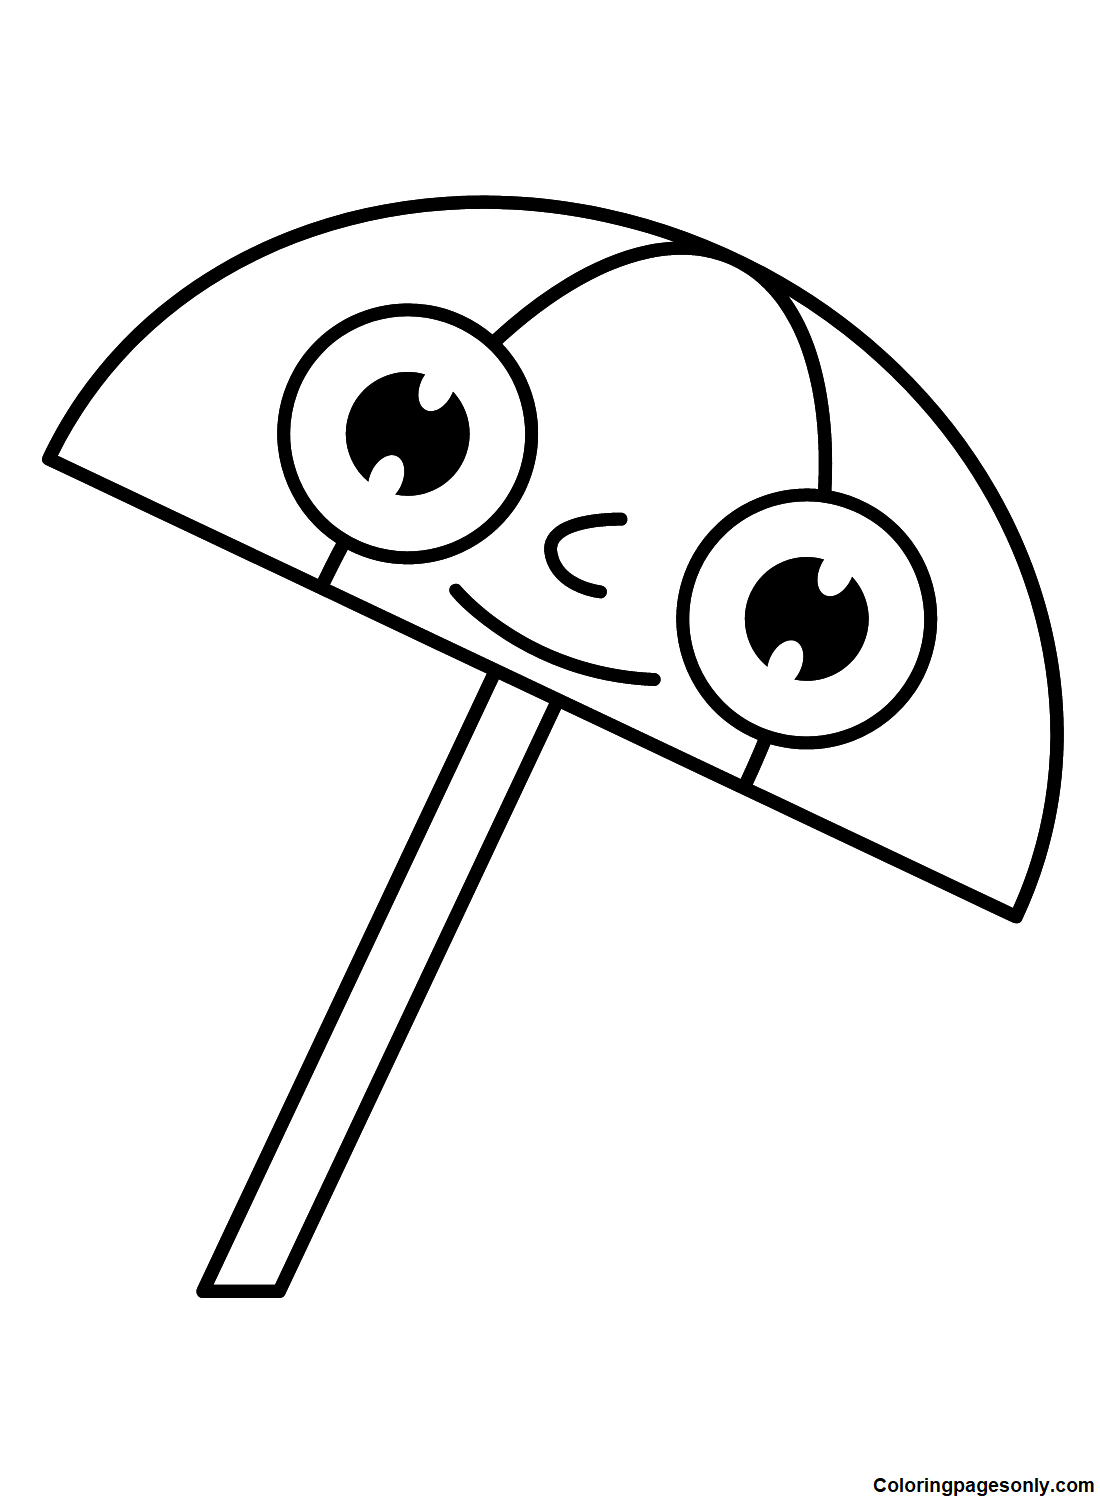 Quirky Umbrella from Umbrella